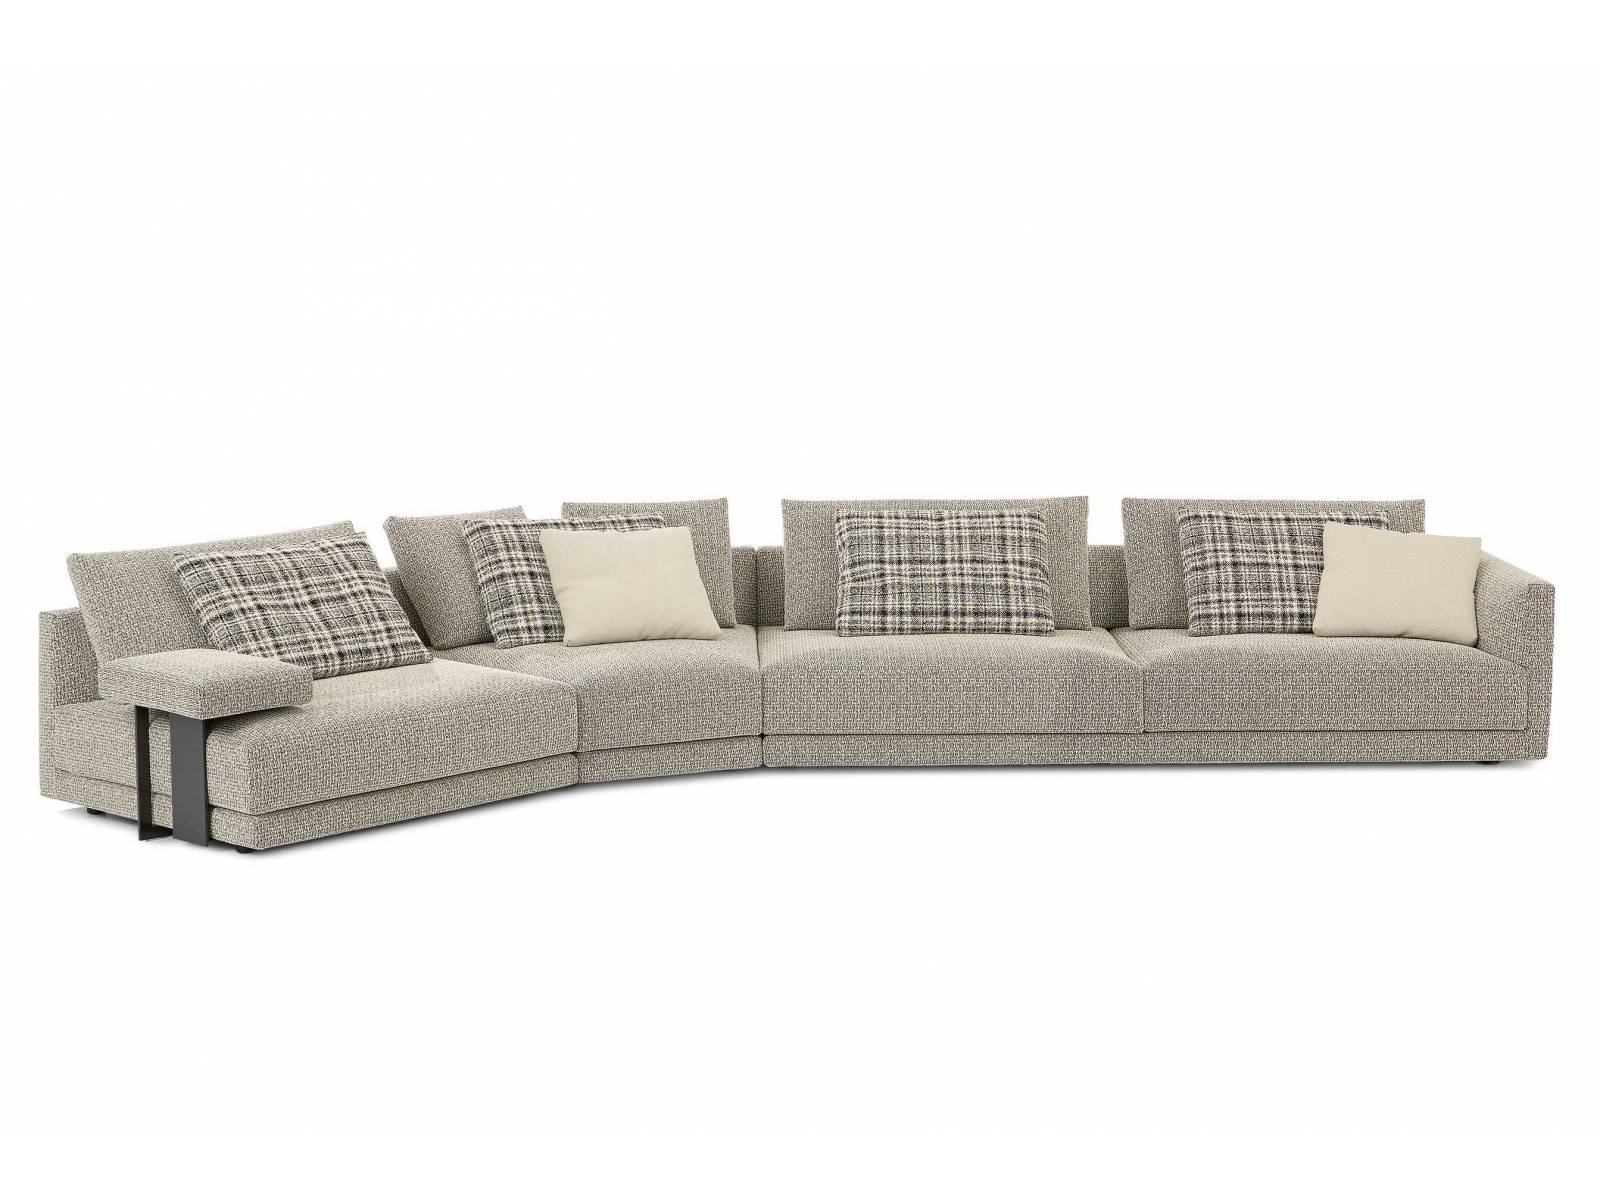 Das Design von «Bristol» ist nicht neu, jedoch weist das Sofa nun nach einer Überarbeitung mehr Komfort auf. Das Modell von Jean-Marie Massaud gibt es fest konfiguriert oder als modulare Version in freier Zusammenstellung. Poliform.